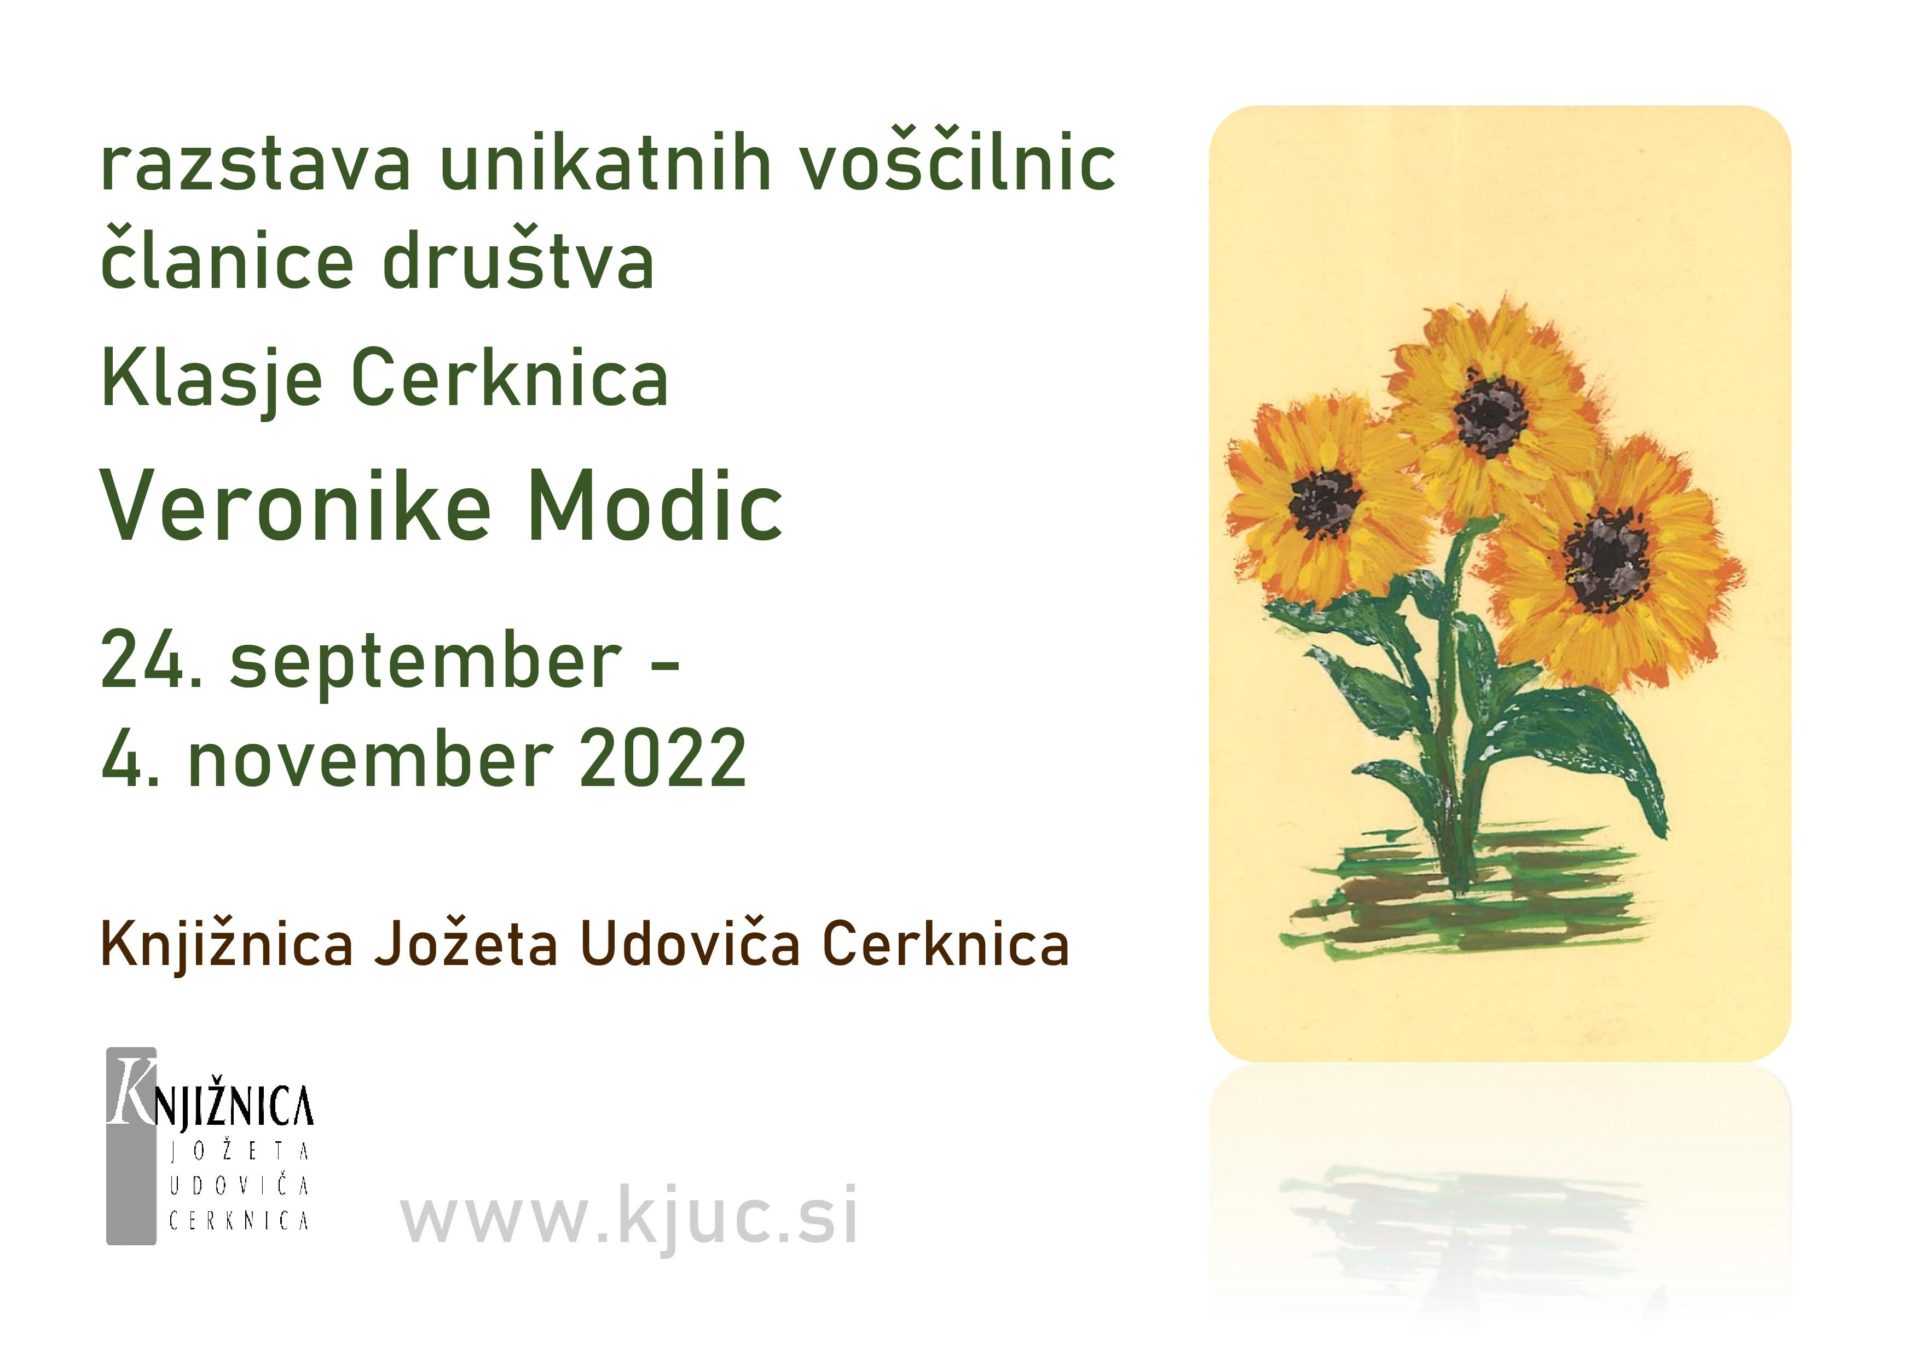 razstava unikatnih voscilnic clanice drustva page 001 - Veronika Modic - razstava unikatnih voščilnic članice društva Klasje Cerknica